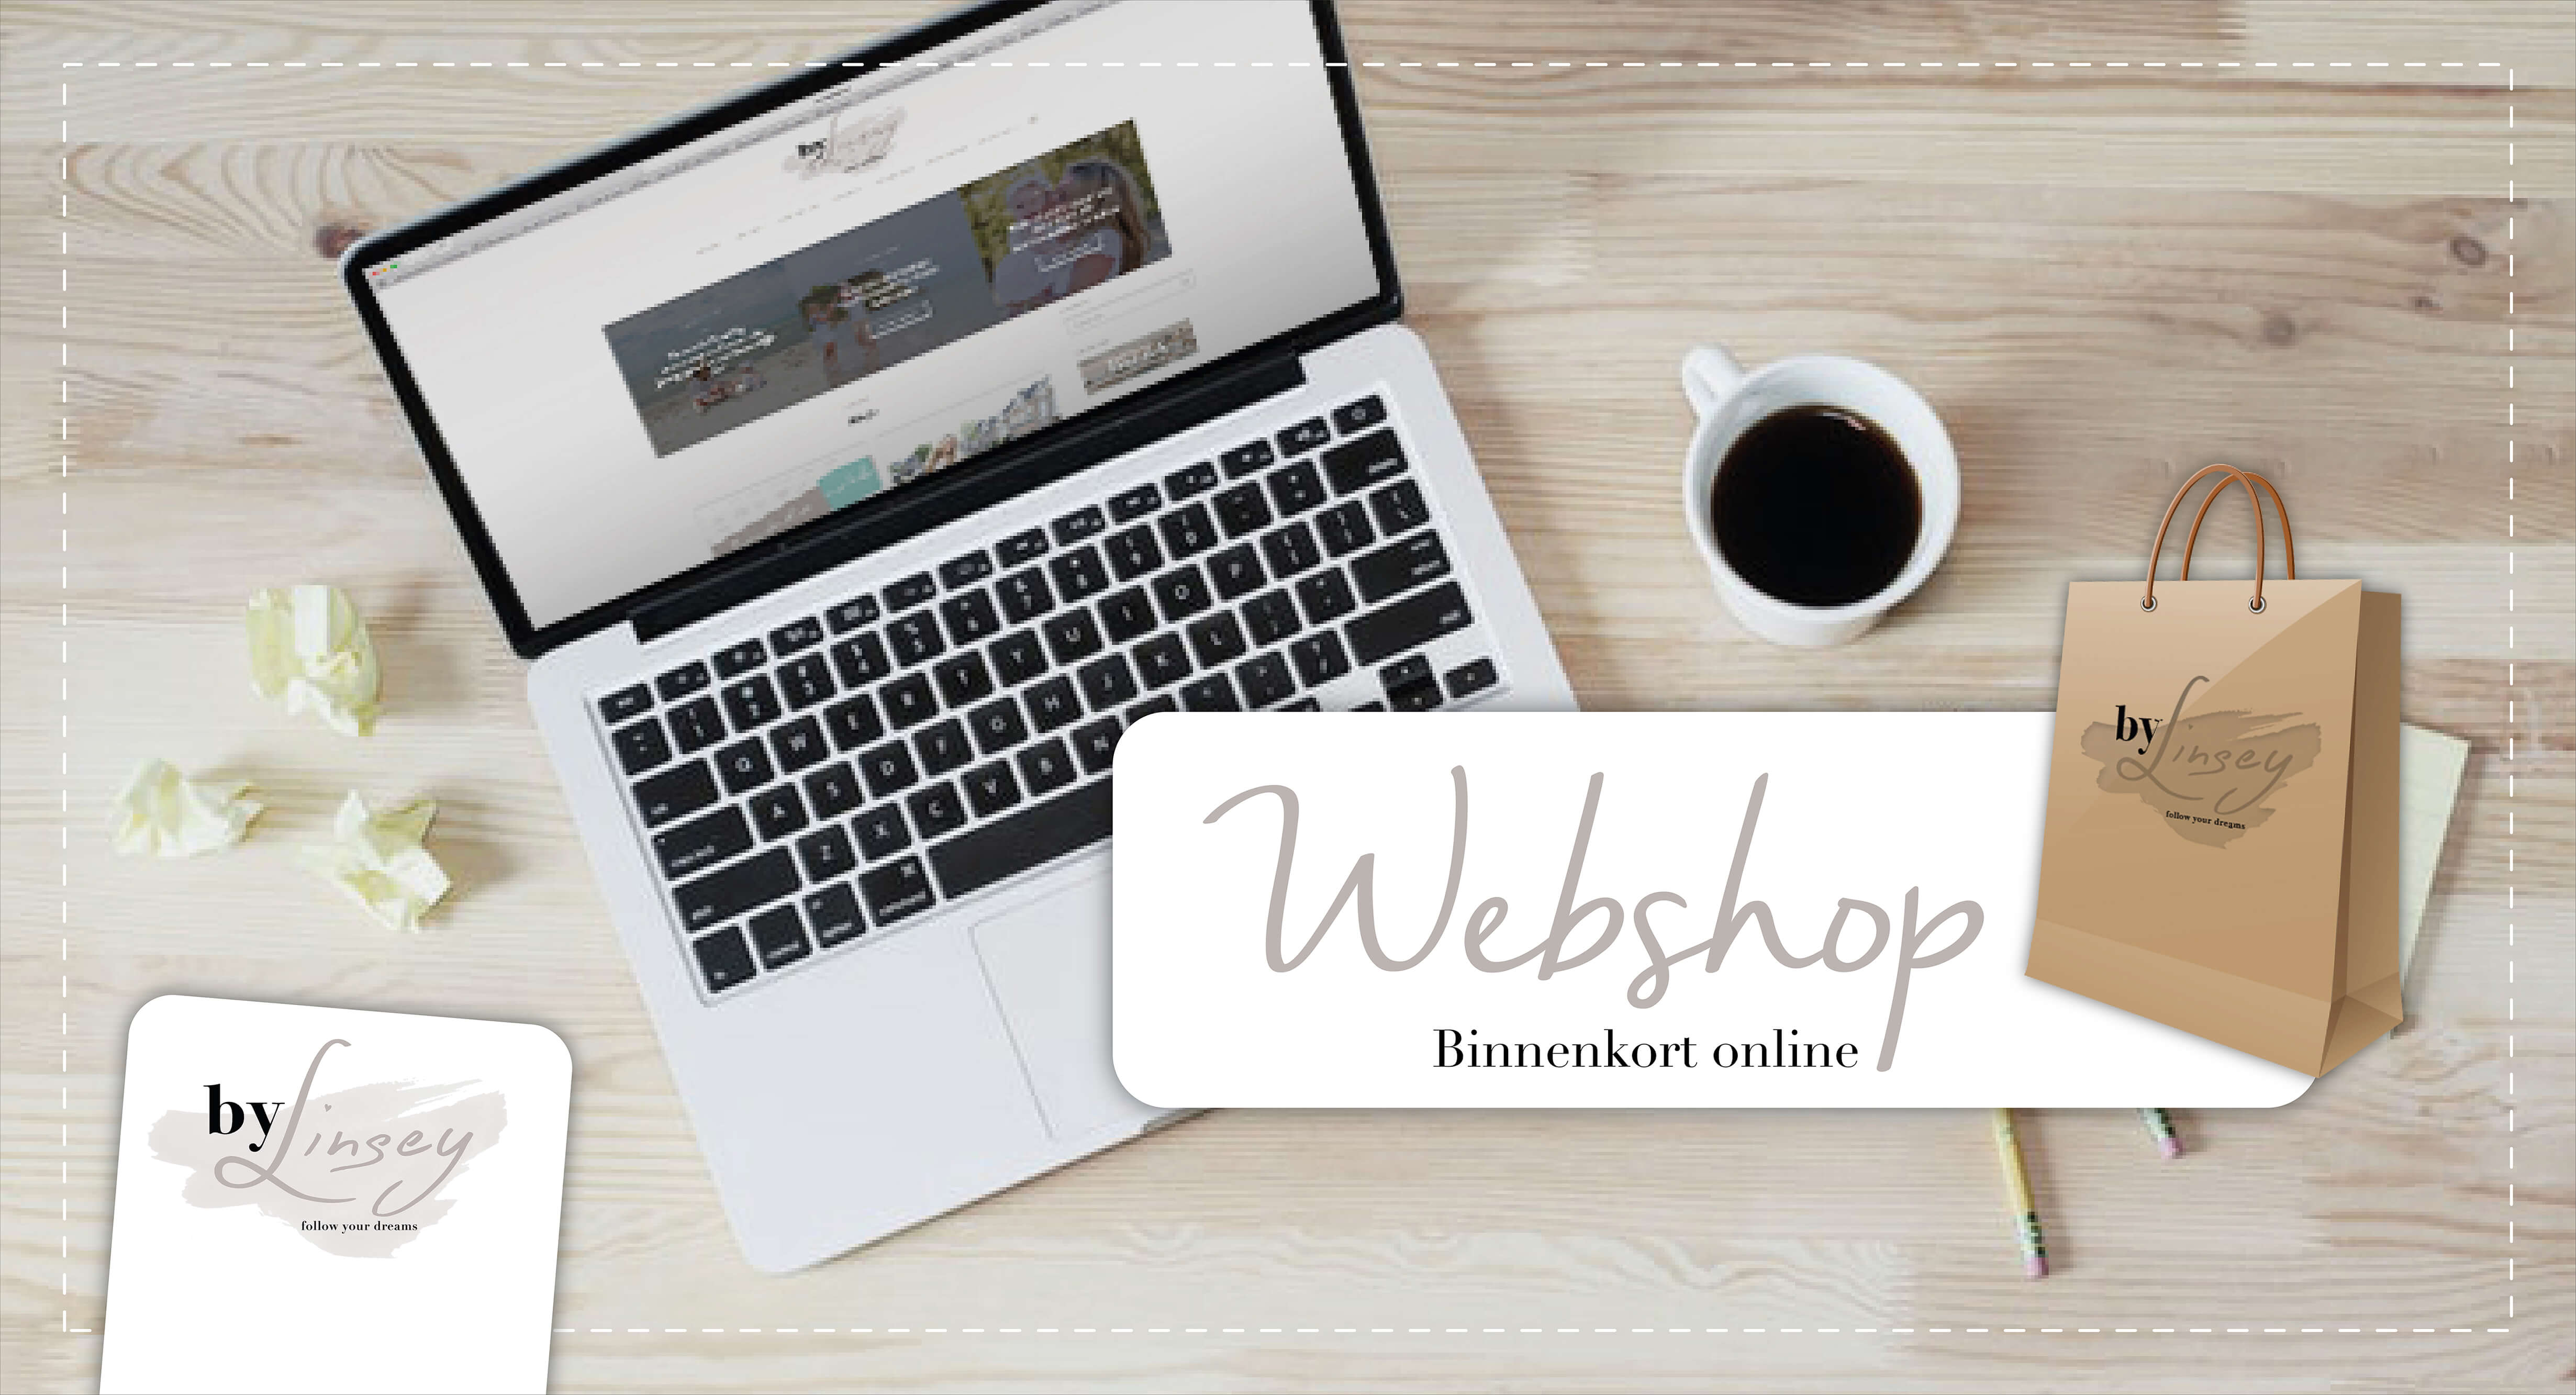 Slager bovenste Editor Binnenkort online: de webshop By Linsey